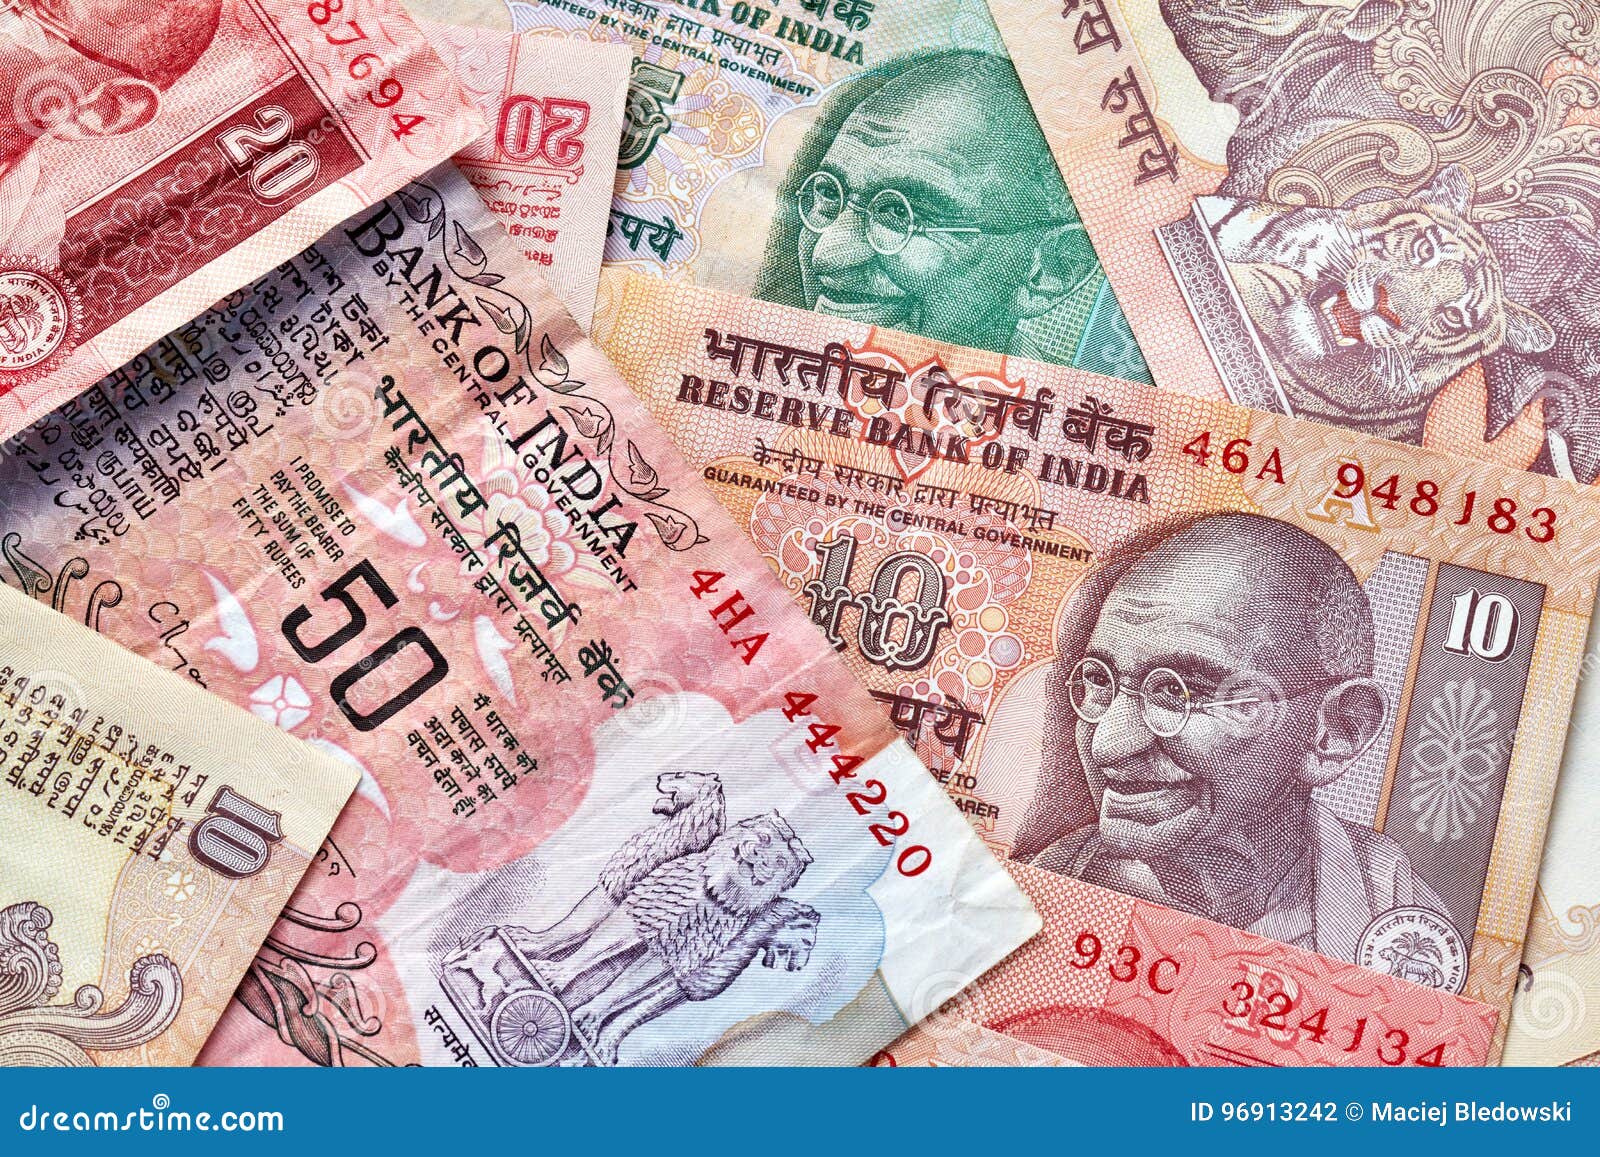 Конвертация рупии. Индийская рупия. Экономика Индии картинки. Торговля с Индией за рупии. Индия и финансы картинки.